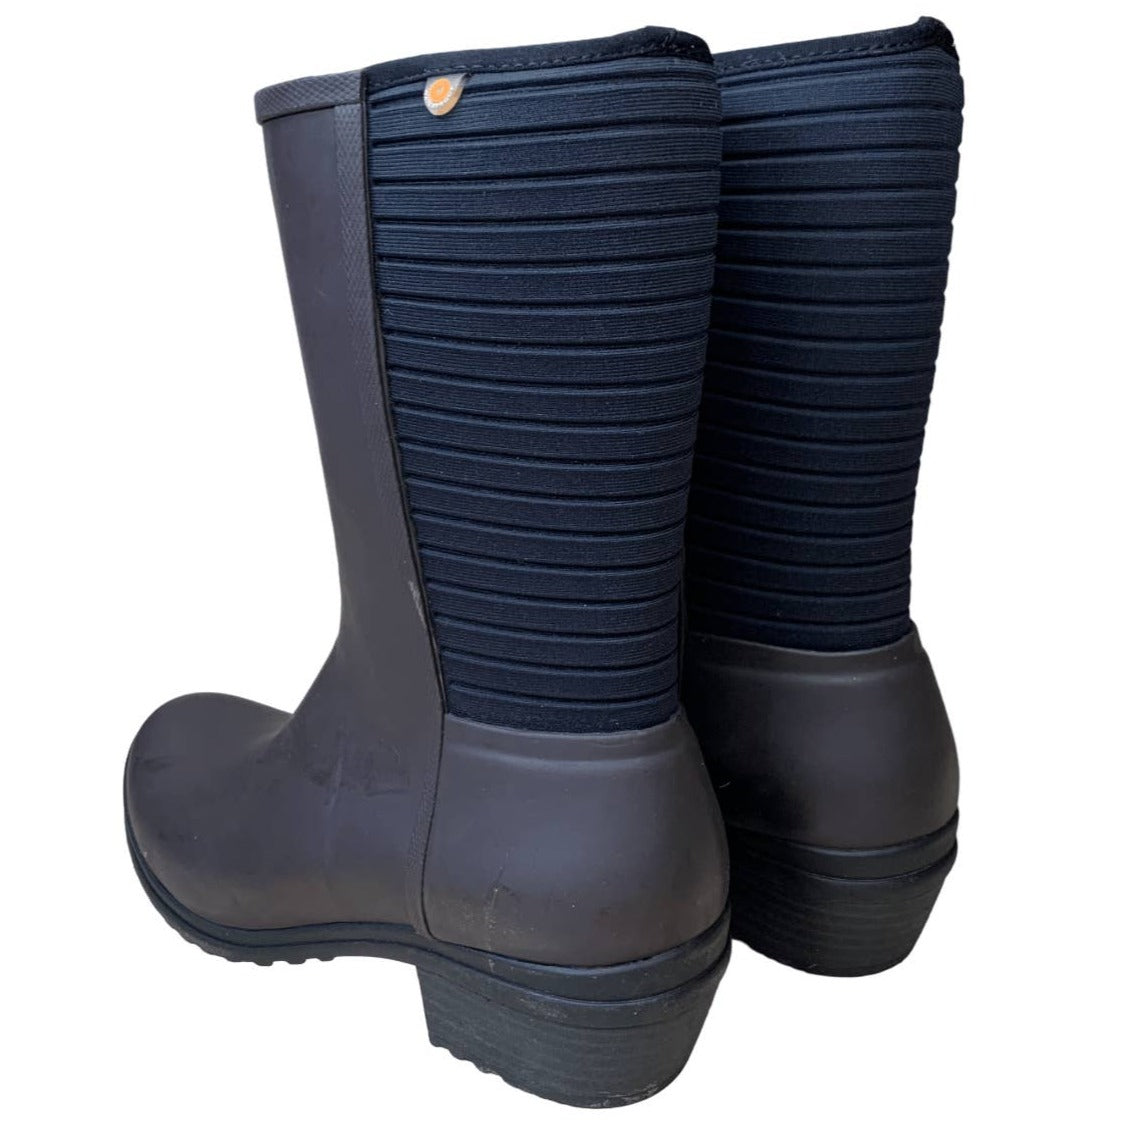 Bogs 'Vista' Rain Boots